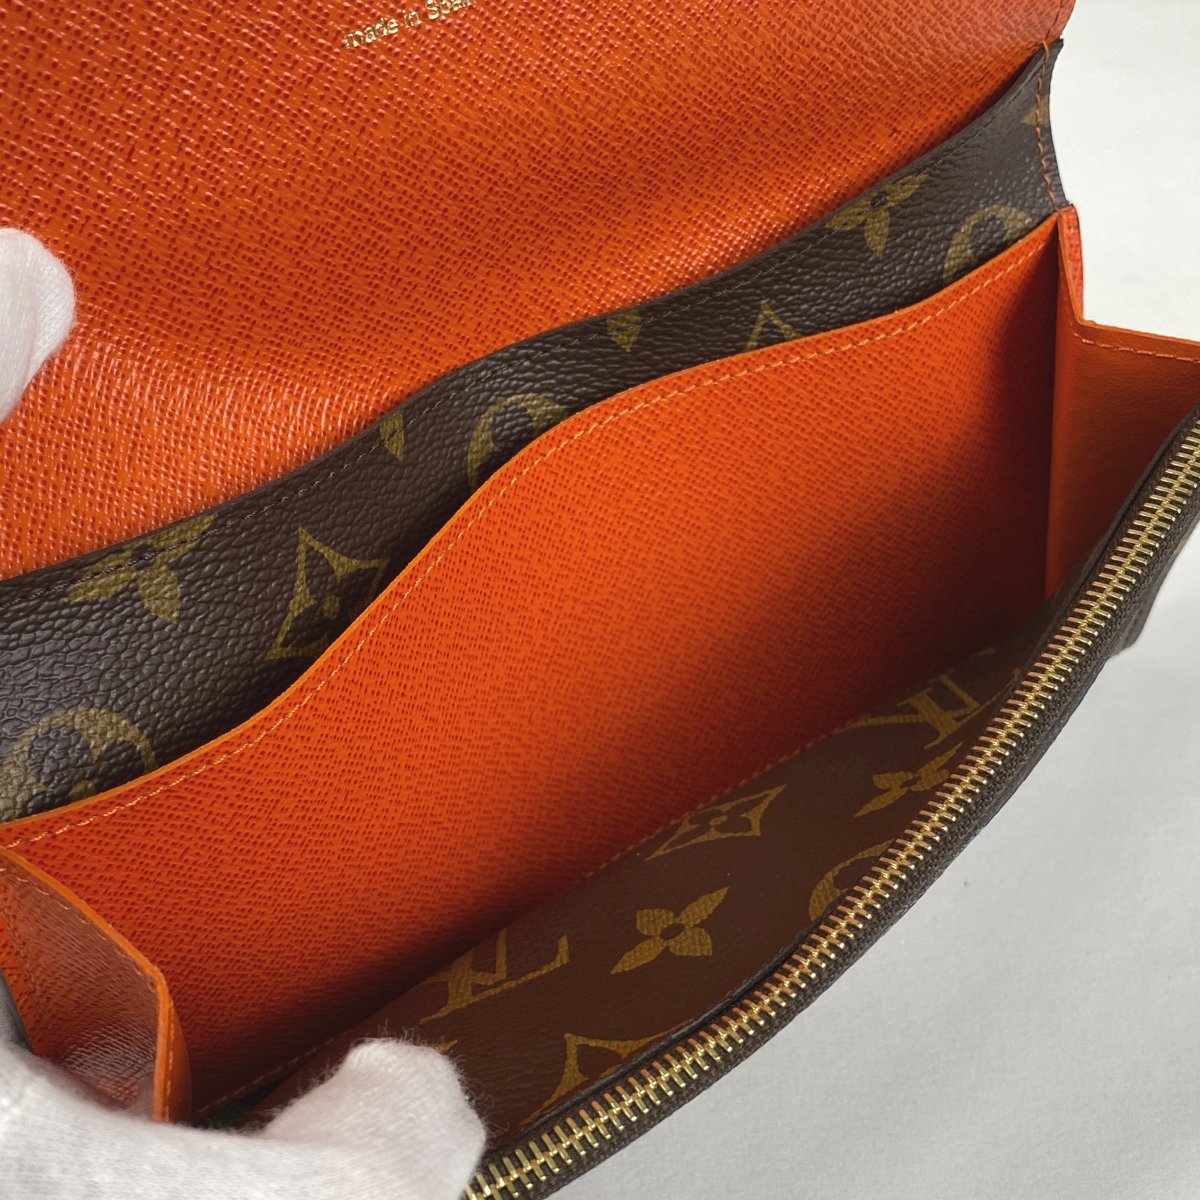 ルイ・ヴィトン Louis Vuitton ポルトフォイユ エミリー 二つ折り 長財布 モノグラム ブラウン ピモン(オレンジ) M60696 レディース  - 3